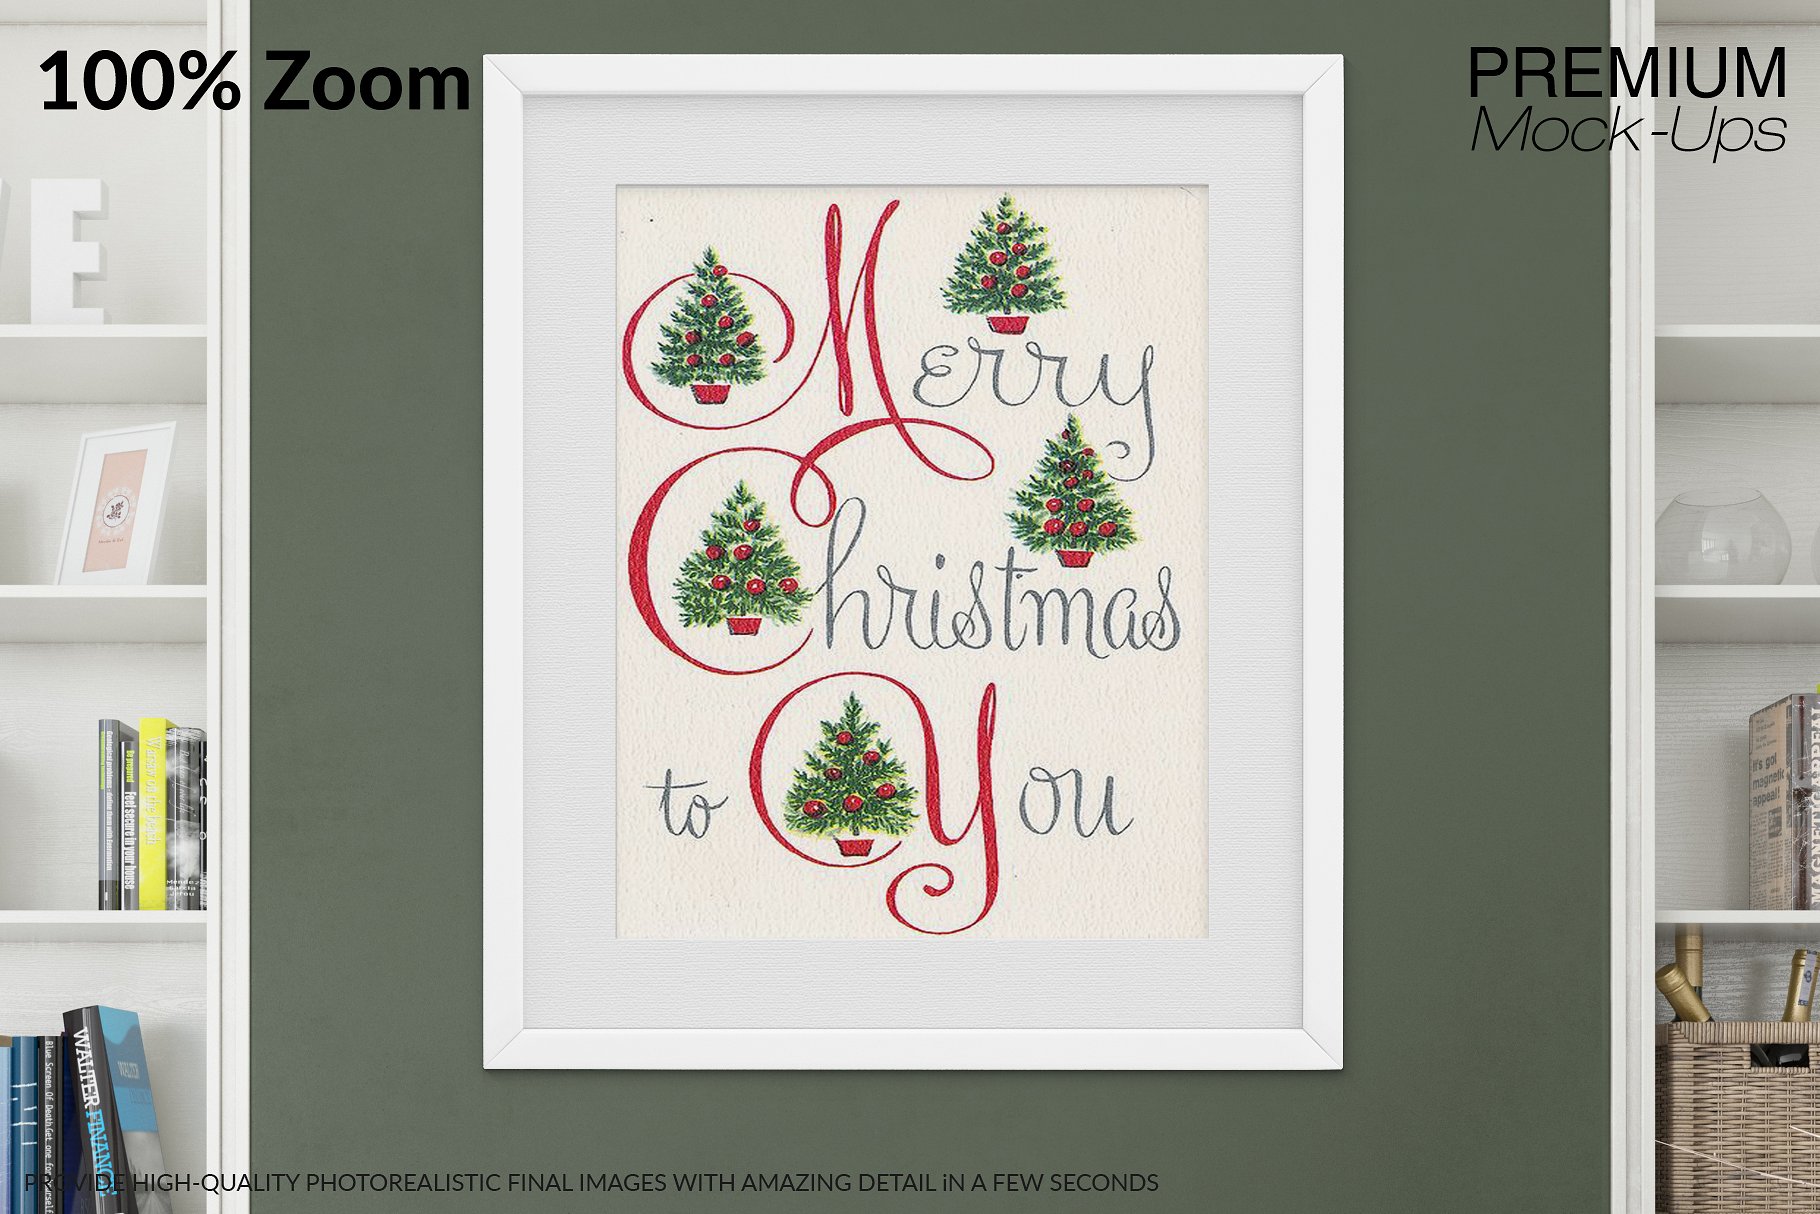 圣诞节客厅装饰展示样机套装 Christmas Living Room Set [psd,jpg]插图(15)